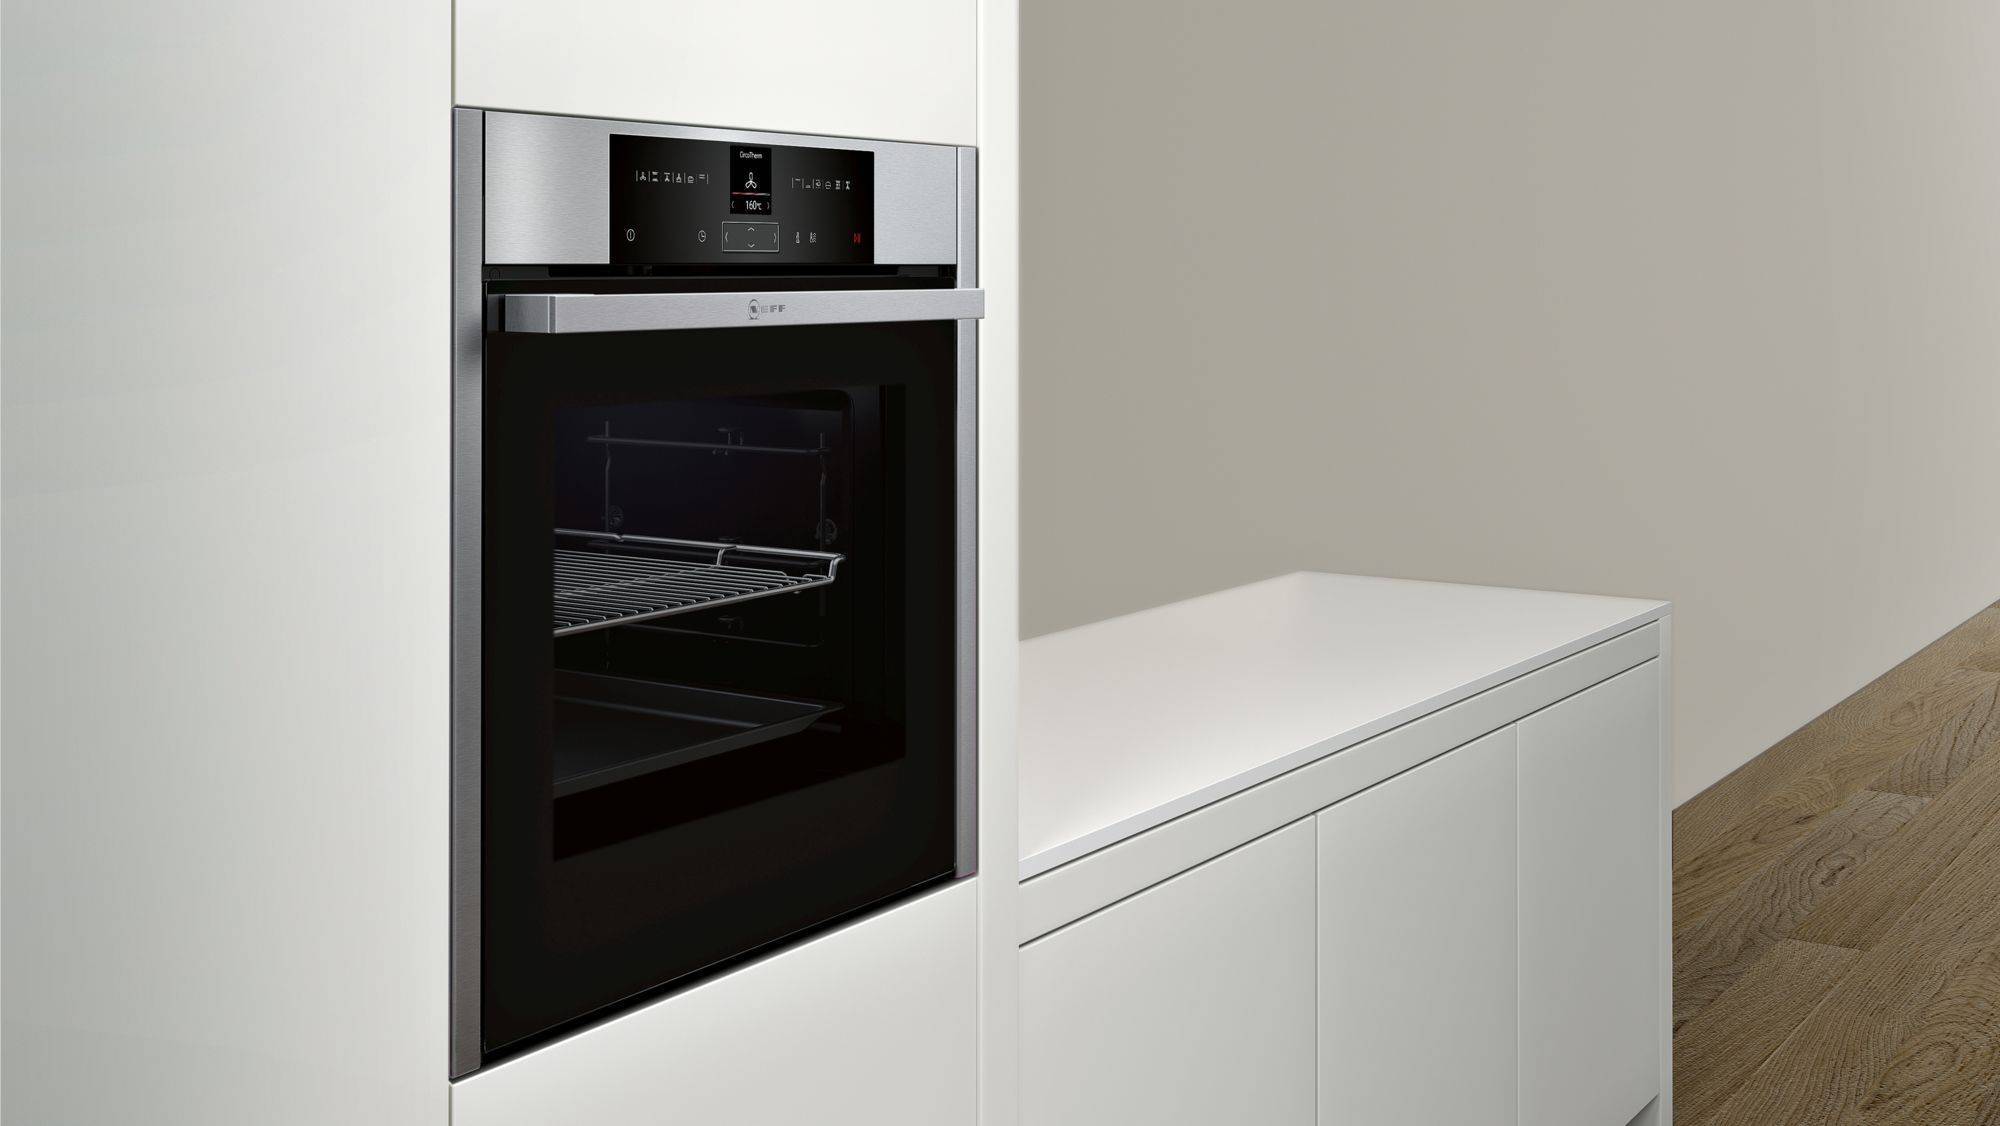 Посудомоечные машины икеа: обзор существующих моделей. обзор посудомоечных машин икеа